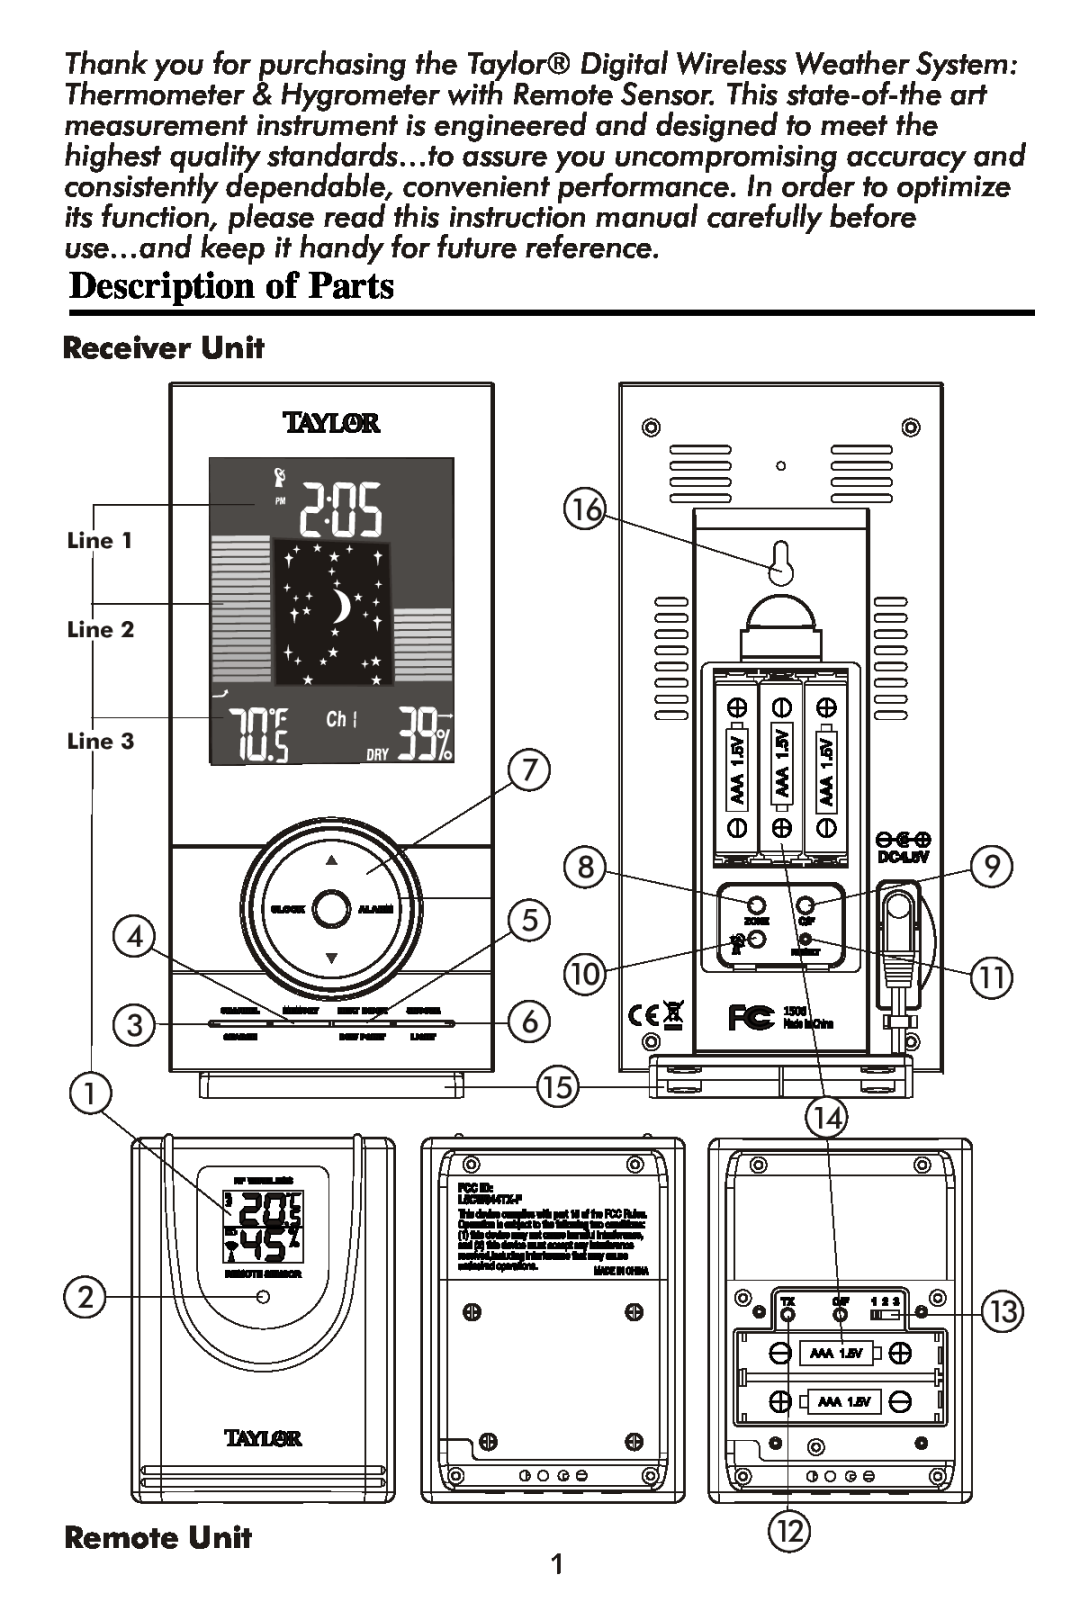 Taylor 1506 instruction manual Description of Parts, Receiver Unit, Remote Unit 